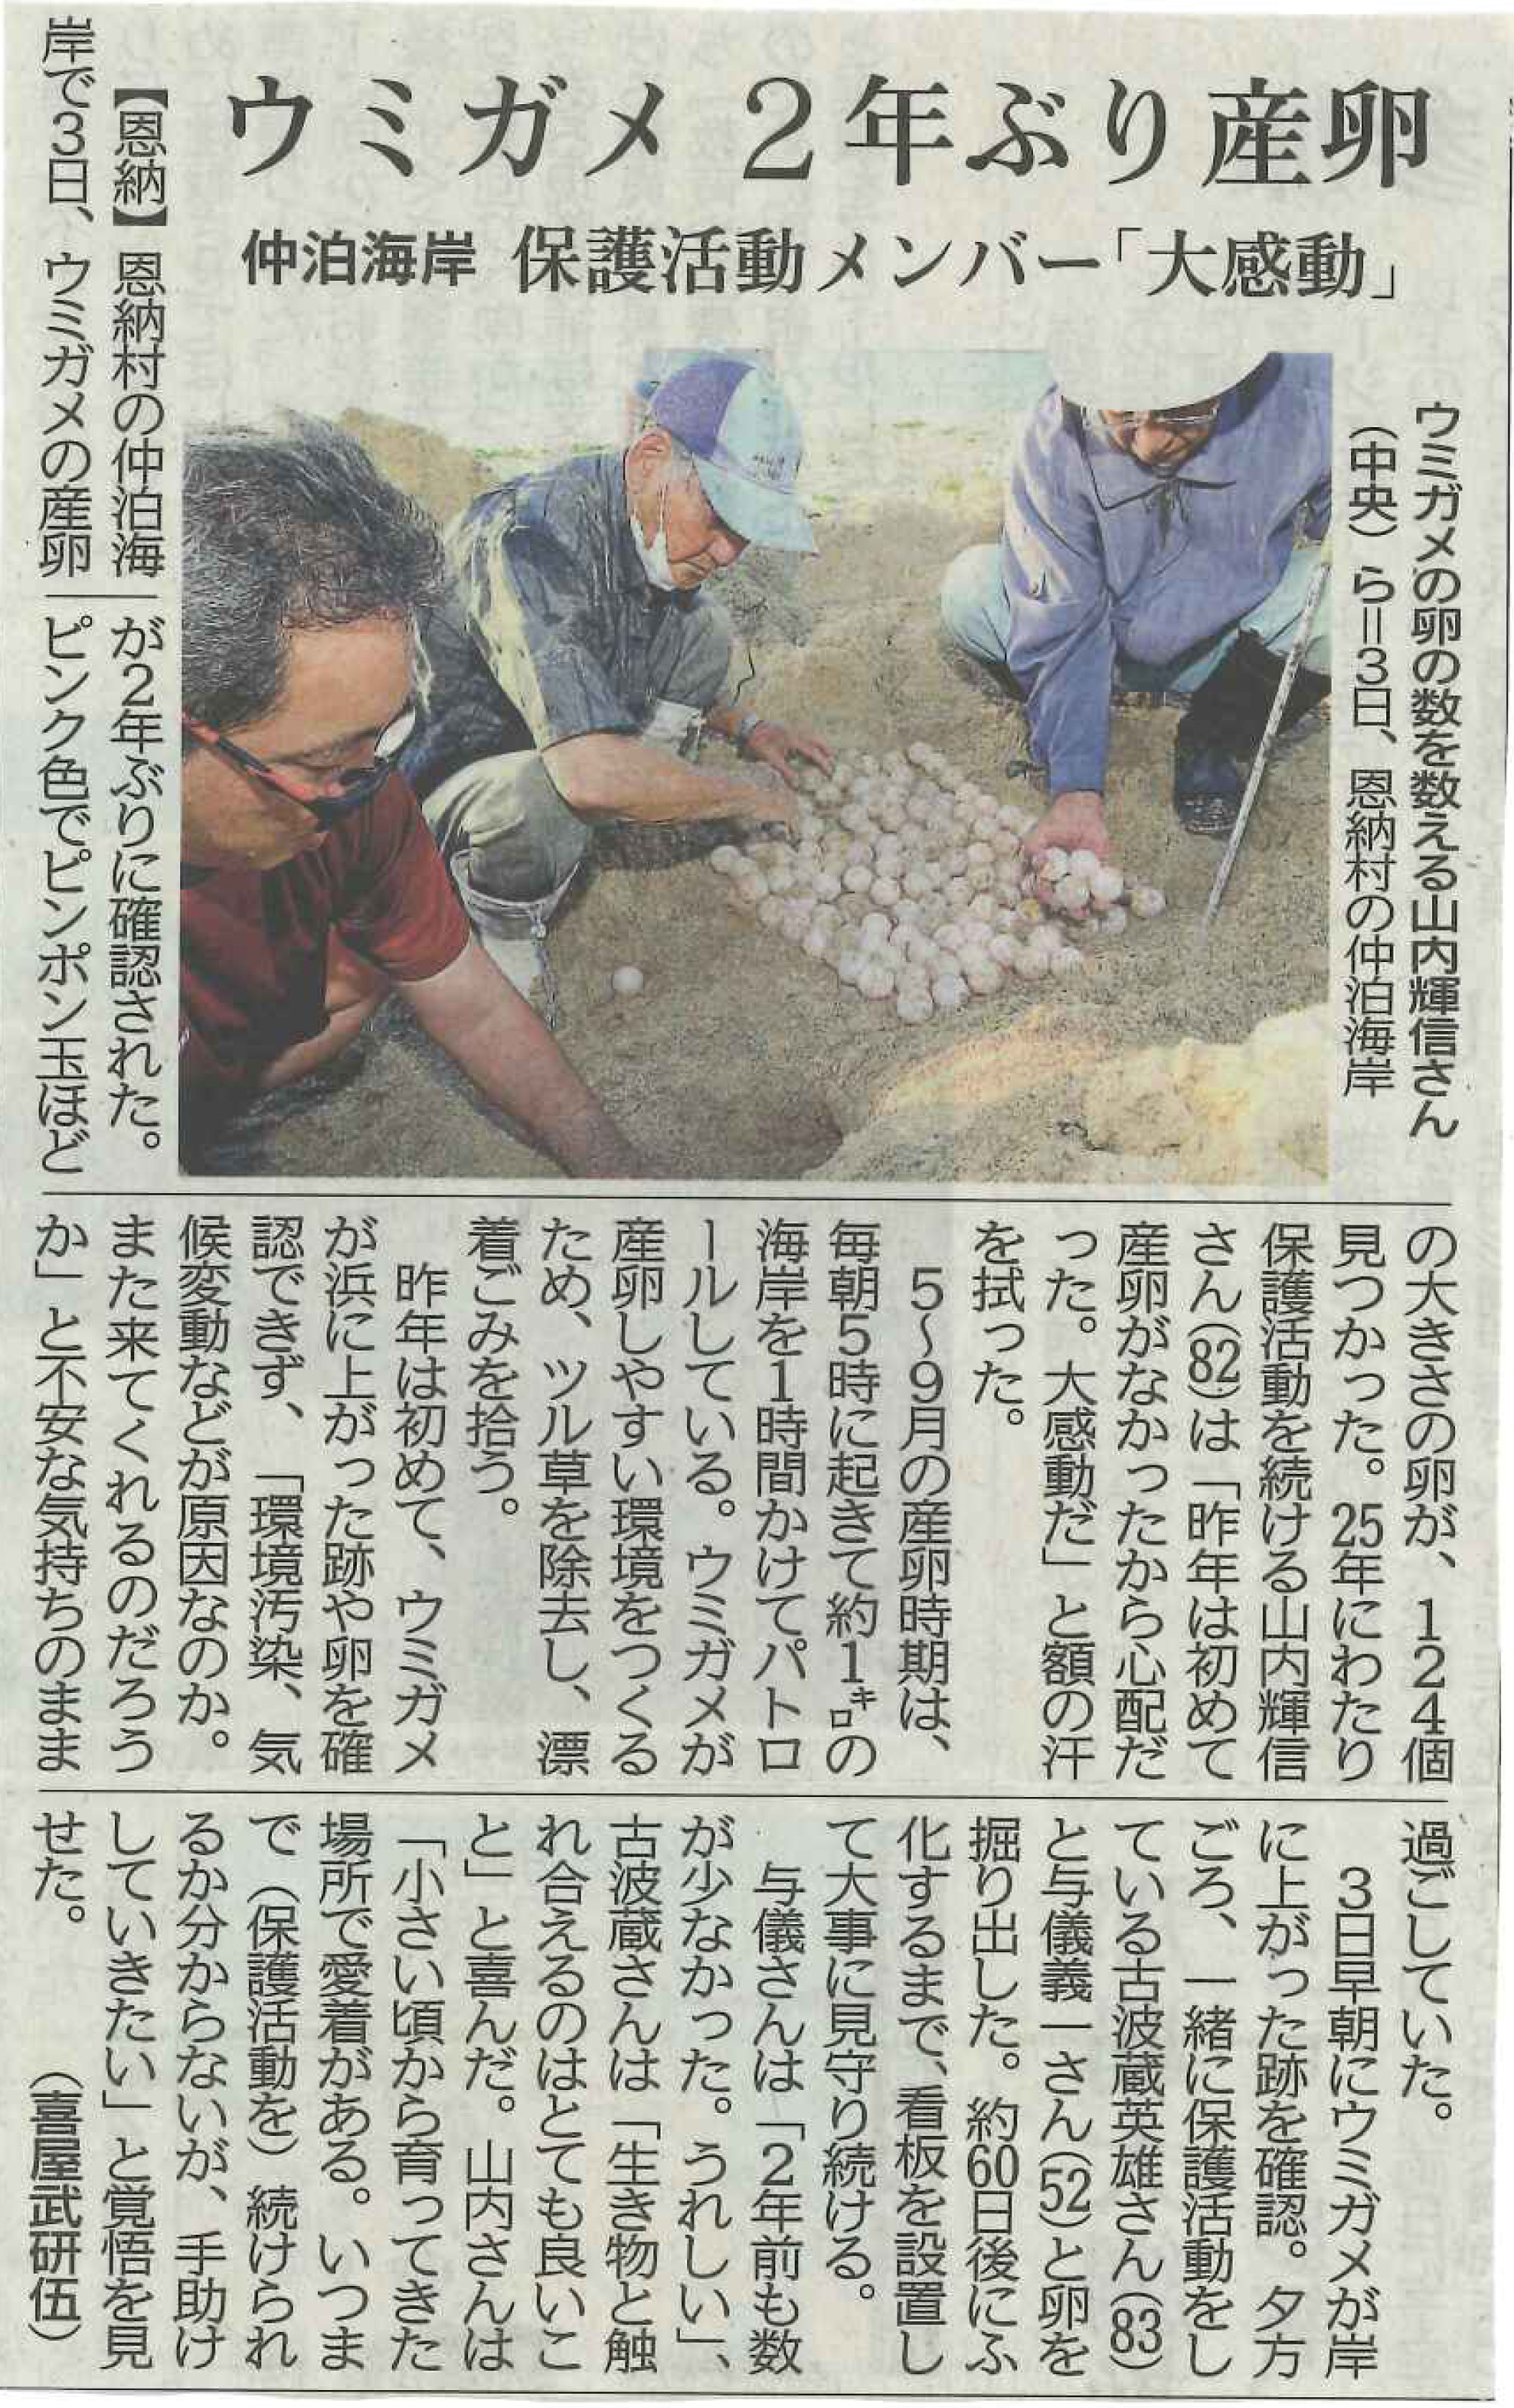 お知らせ ウミガメの産卵が確認されました 掲載情報 公式 恩納村観光協会webサイト